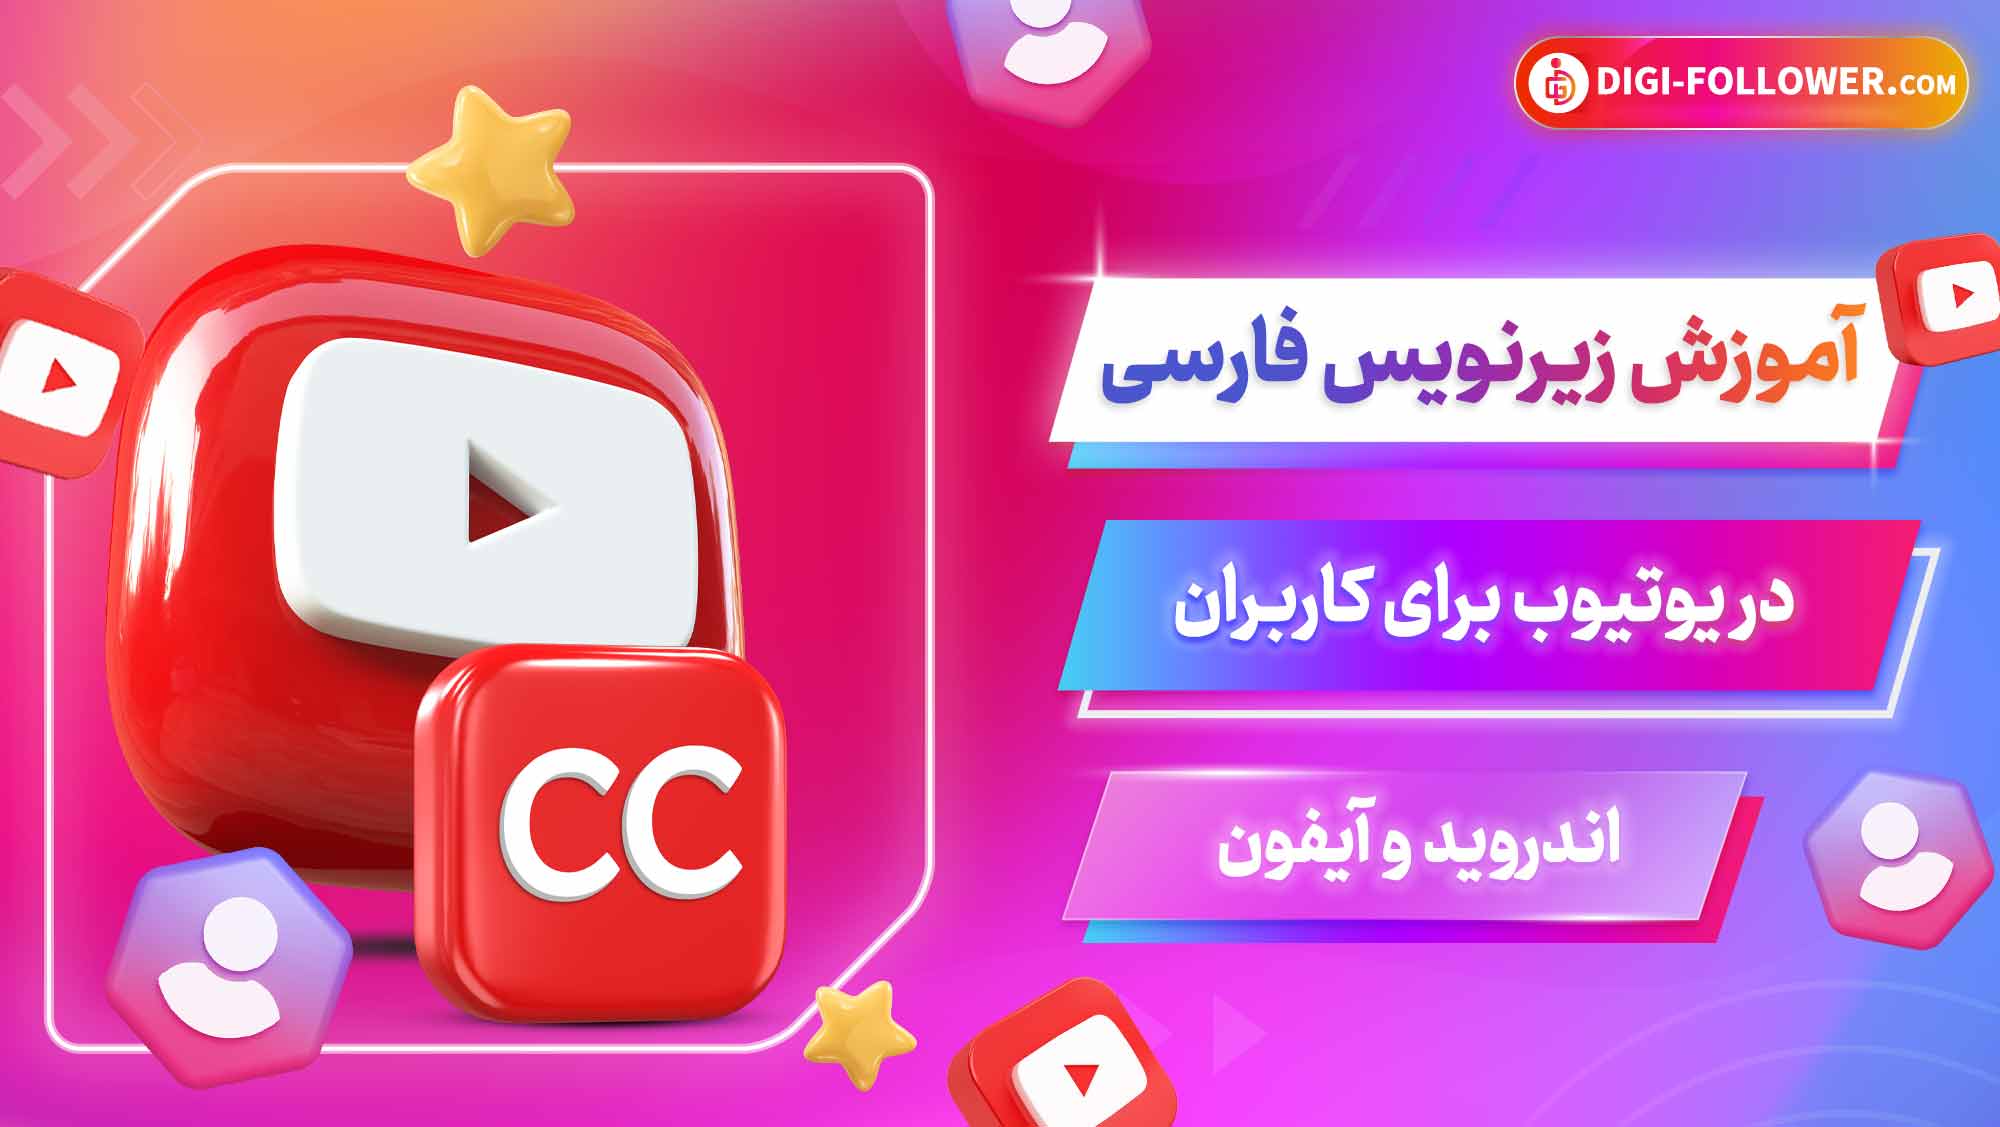 آموزش زیرنویس فارسی در یوتیوب برای کاربران اندروید و آیفون